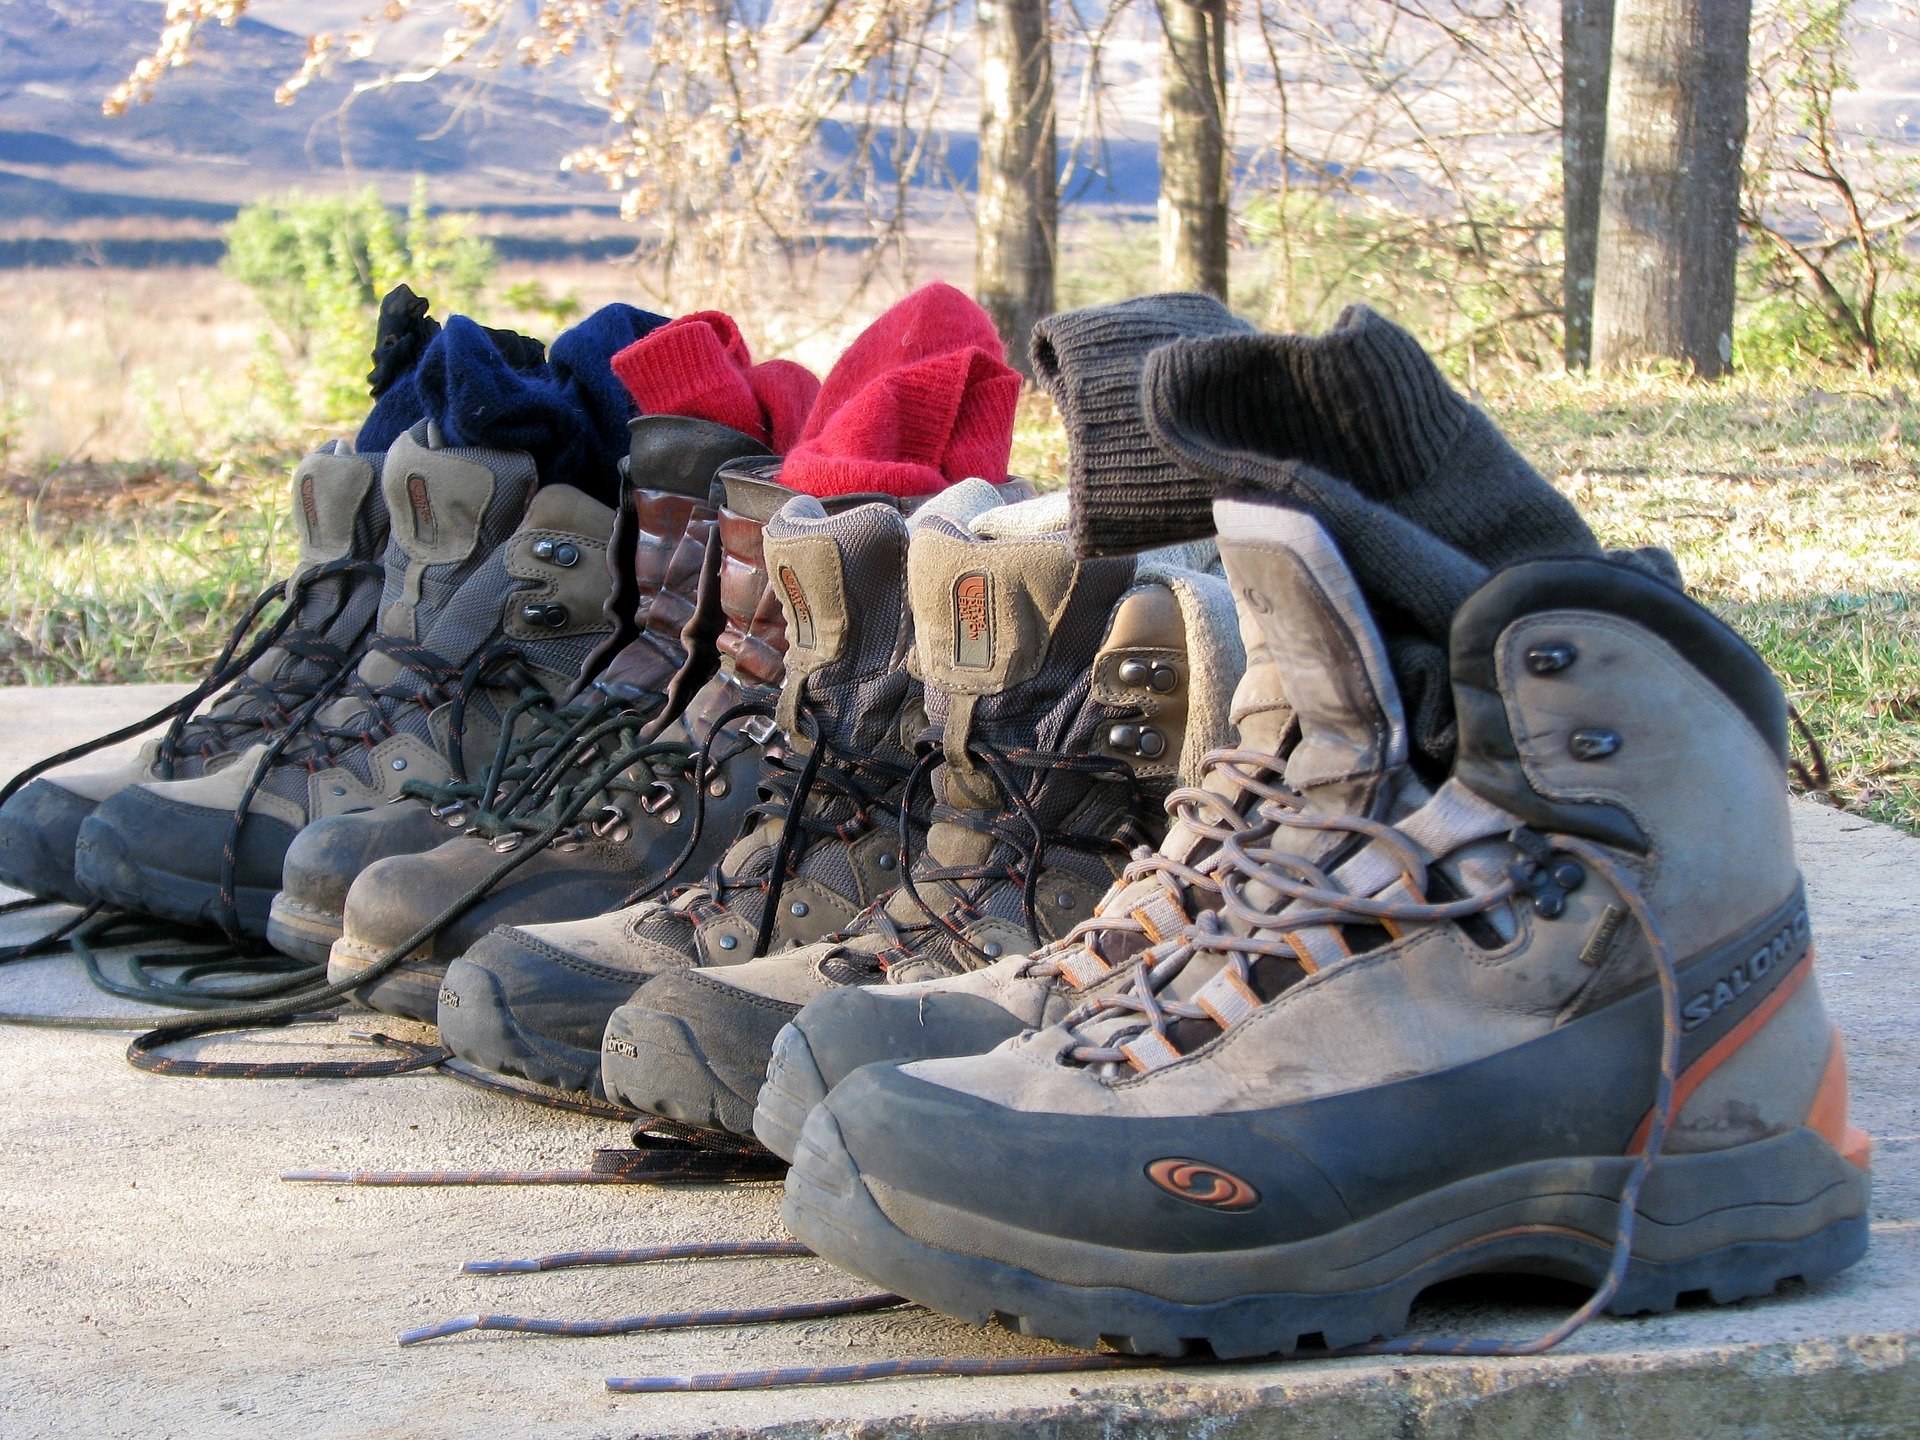 Styrk dine vandrefødder! - DVL Fodterapeut Janne Dehn underviser DVL's medlemmer i fødder, sko og fodpleje. Læs hendes 5 bedste råd til gøre dine fødder klar til vandreturen.